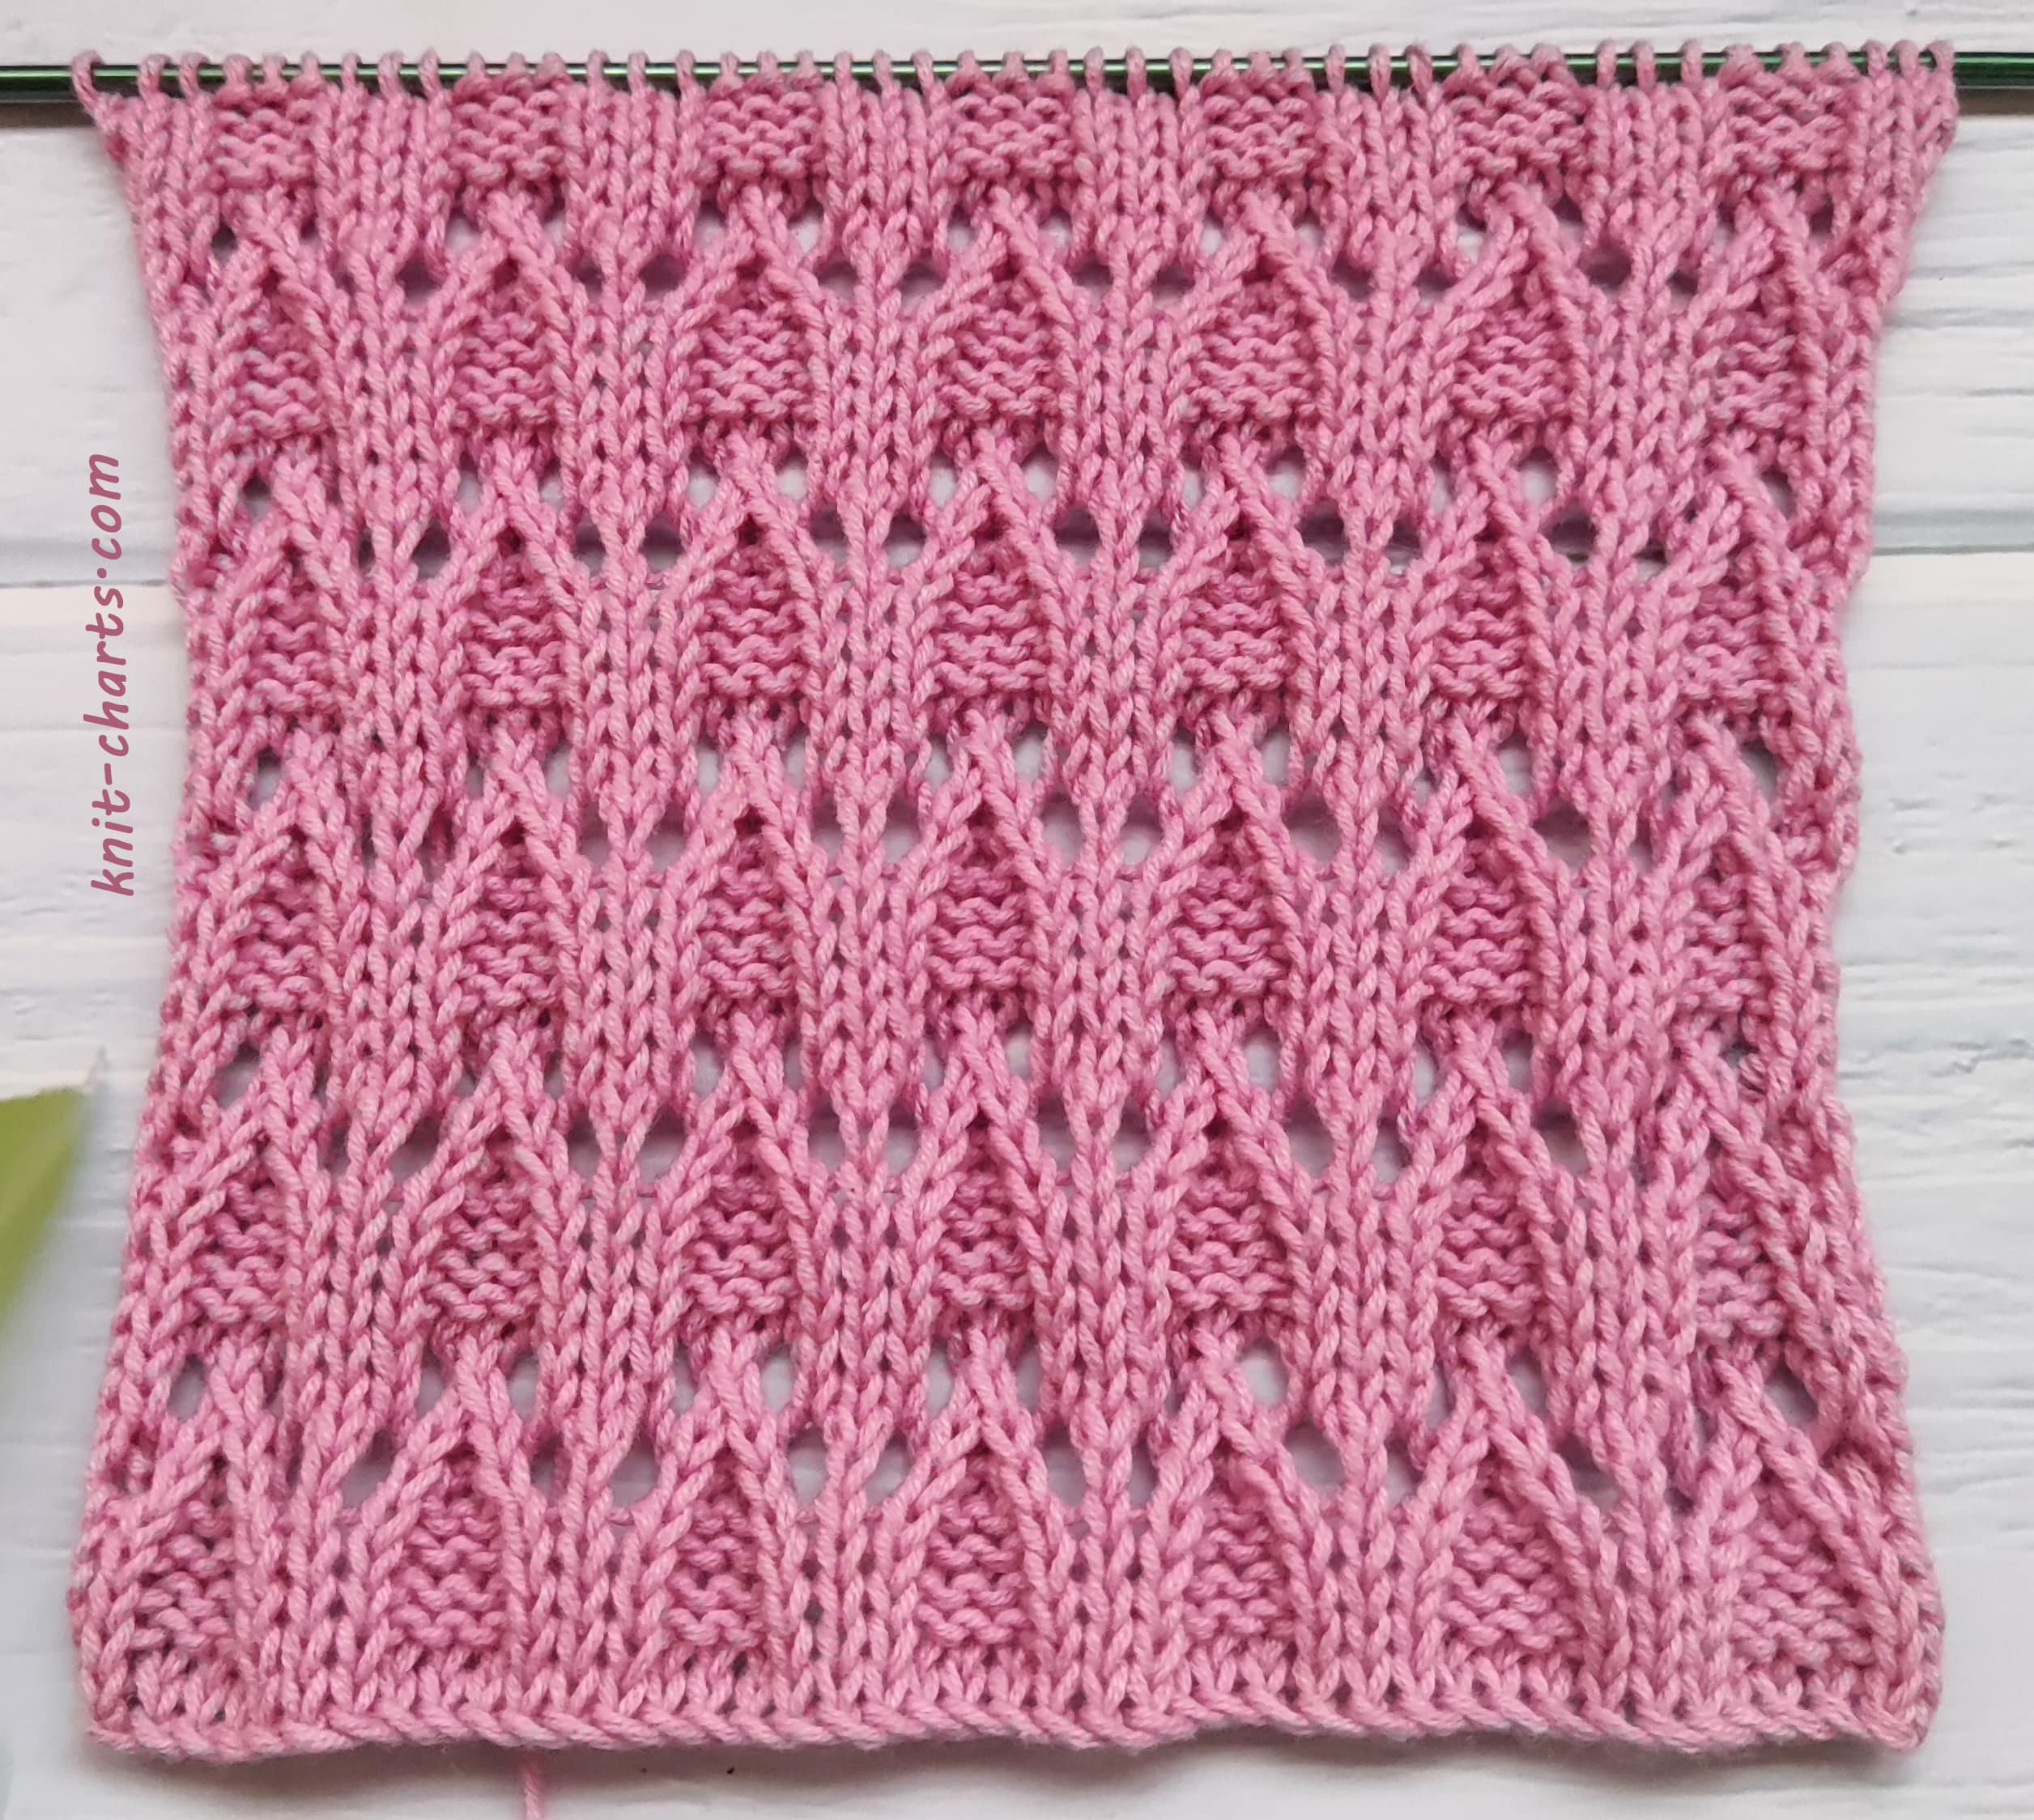 Free Knitting Patterns - Lace Stitch Knitting Pattern